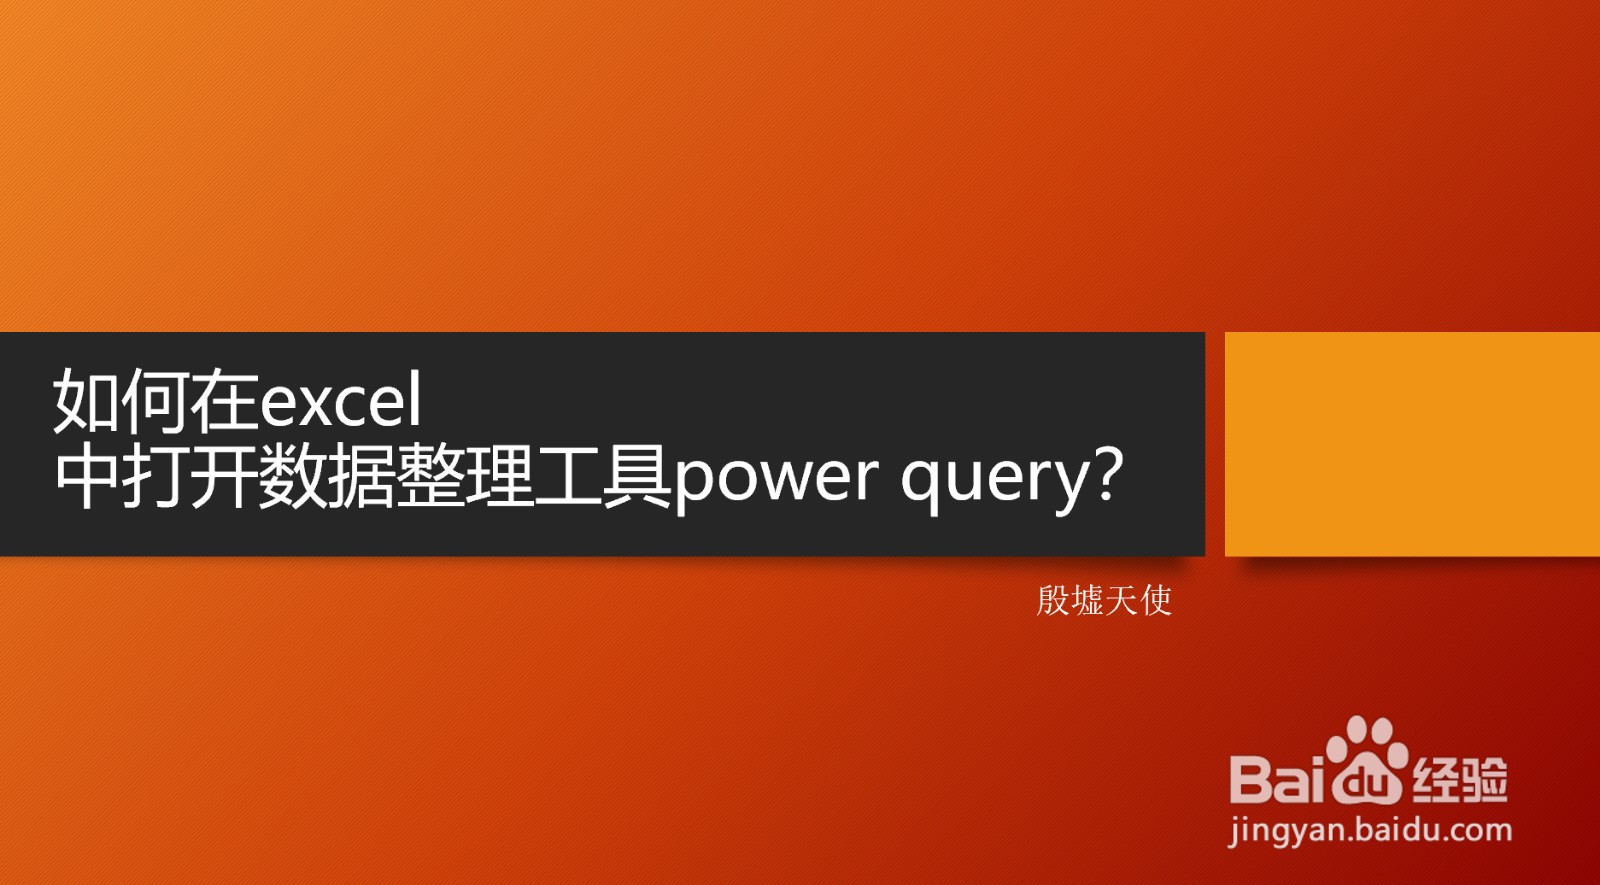 如何在excel中打开数据整理工具power query？